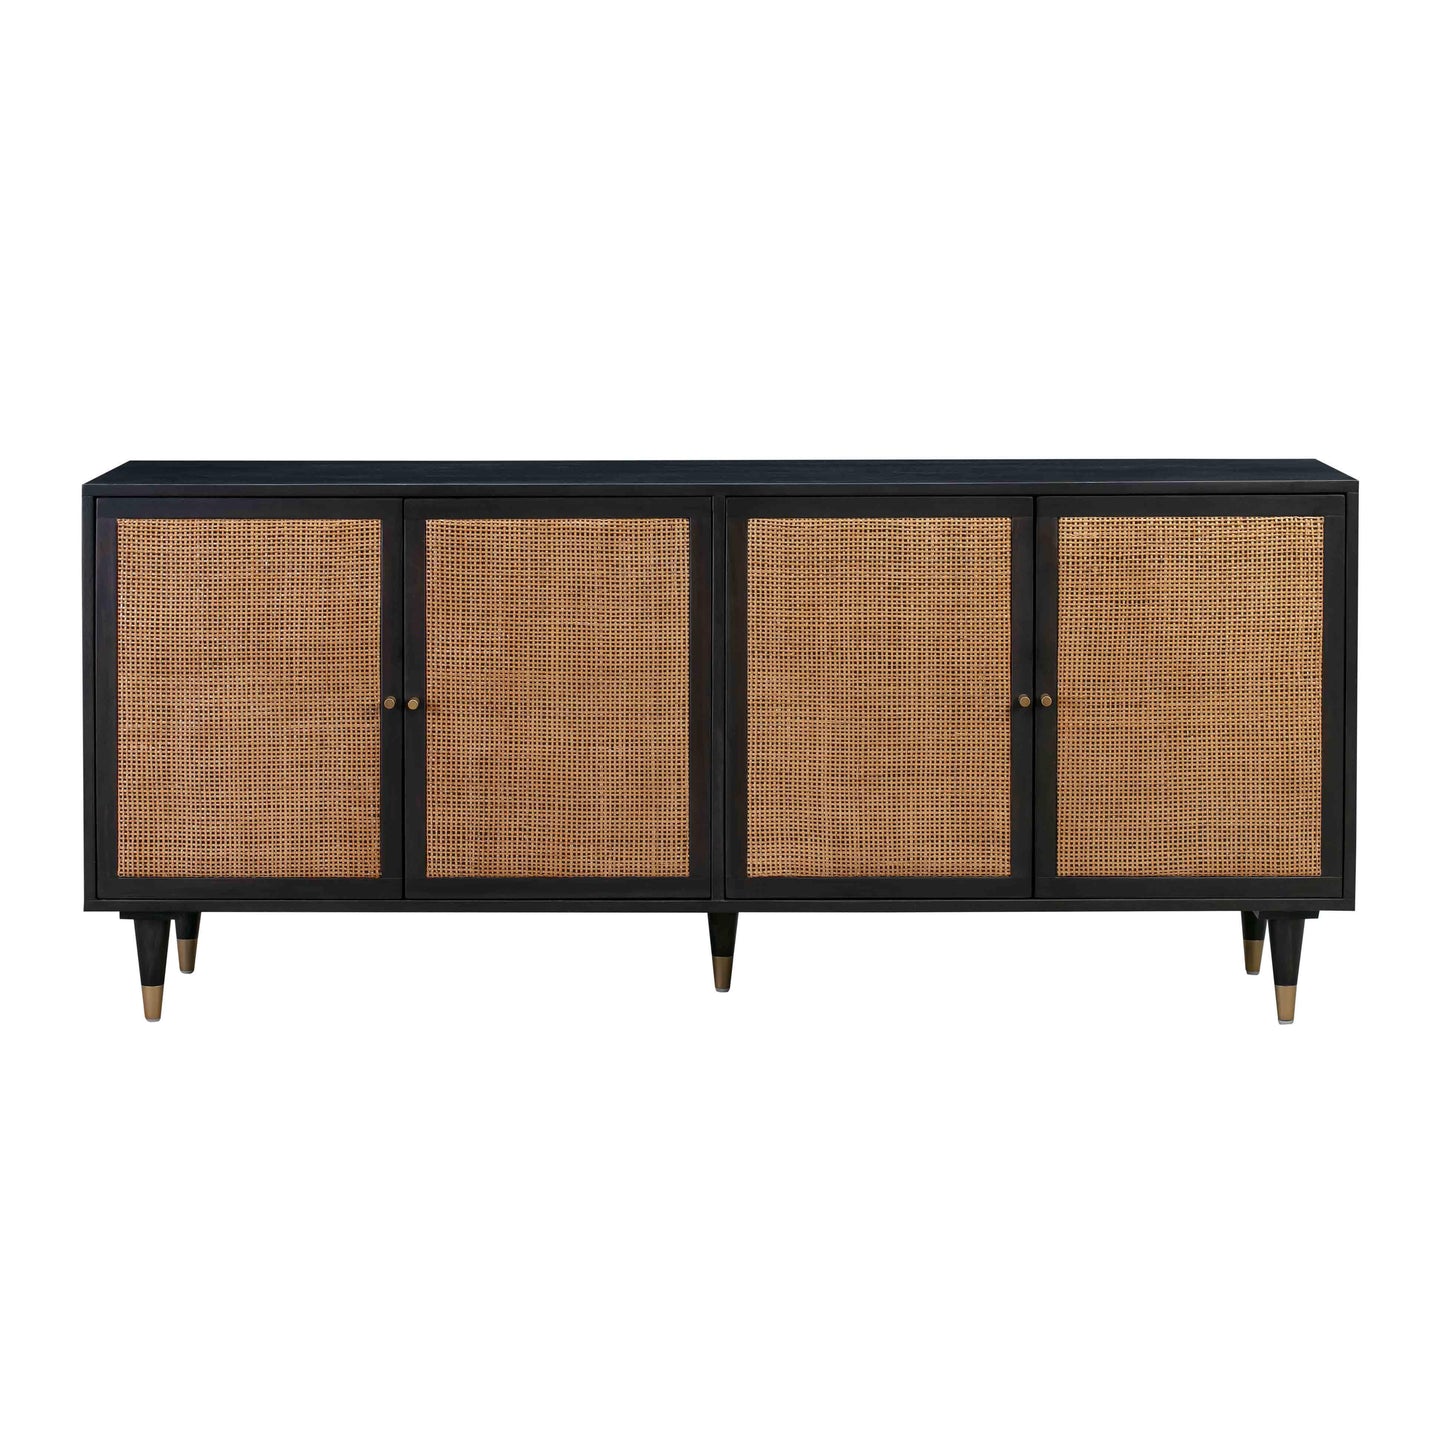 Tov Furniture Sierra Noir Sideboard